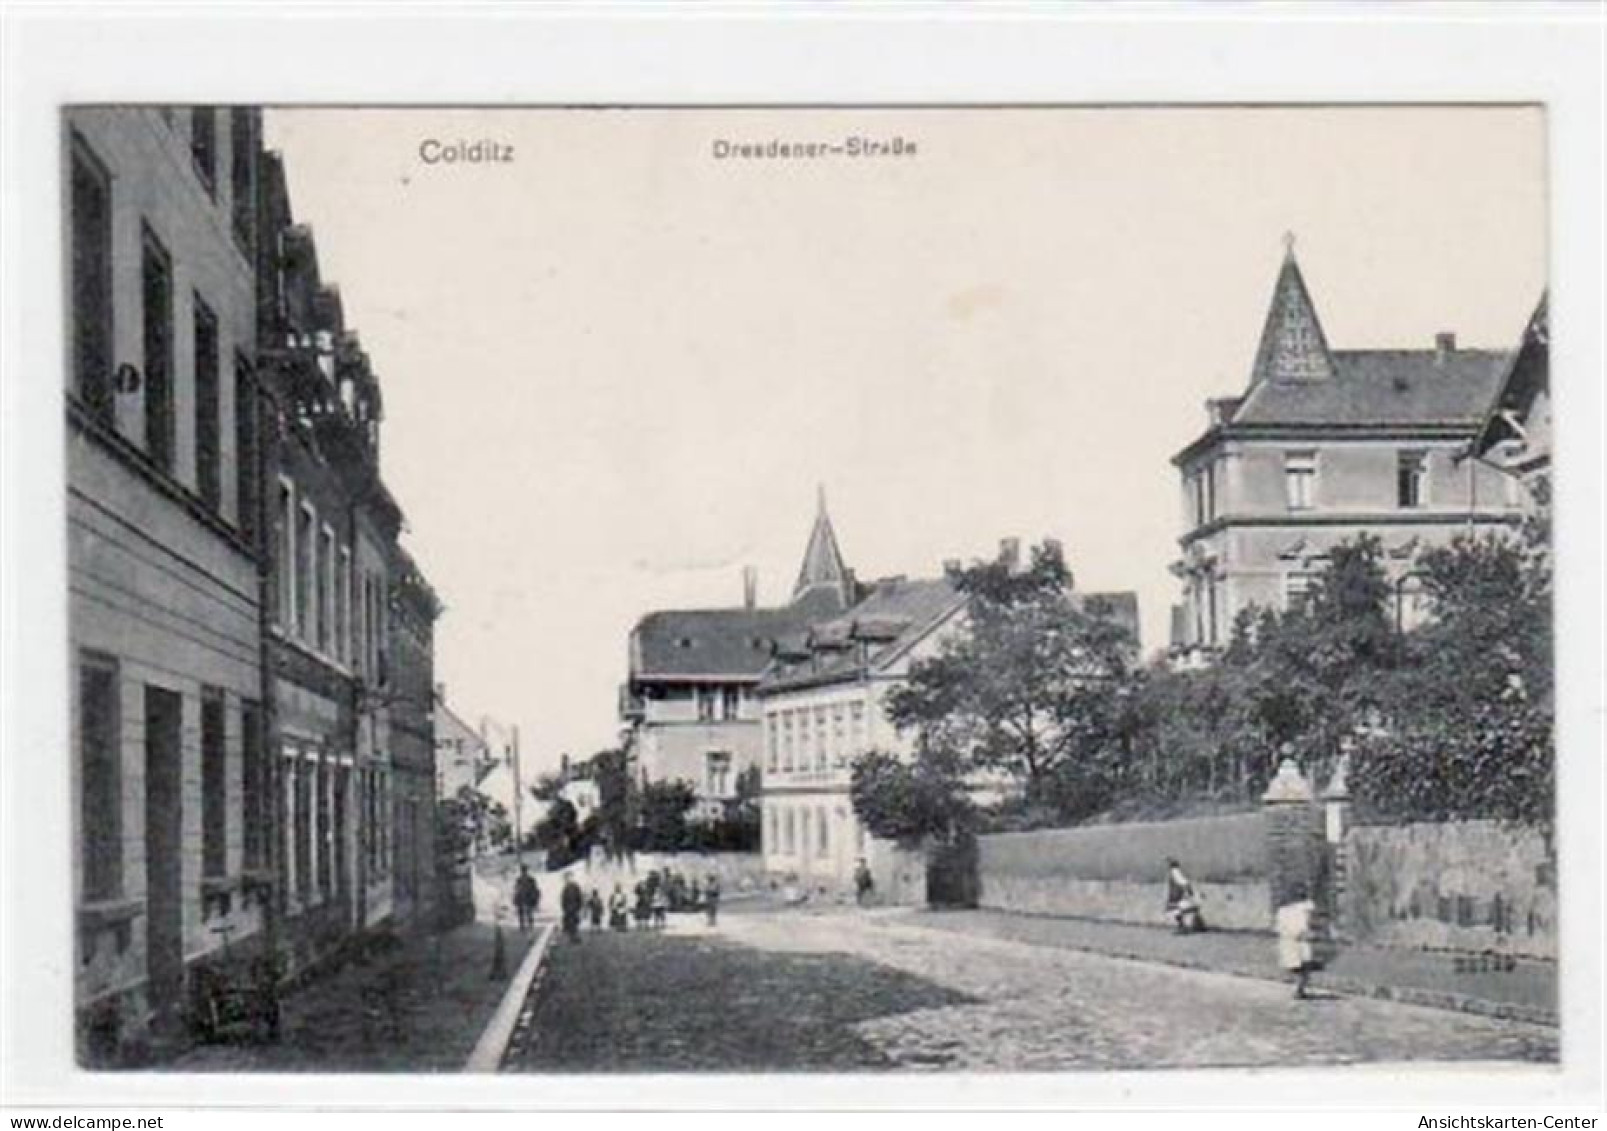 39020101 - Colditz Mit Dresdener - Strasse Gelaufen Von 1913. Gute Erhaltung. - Colditz